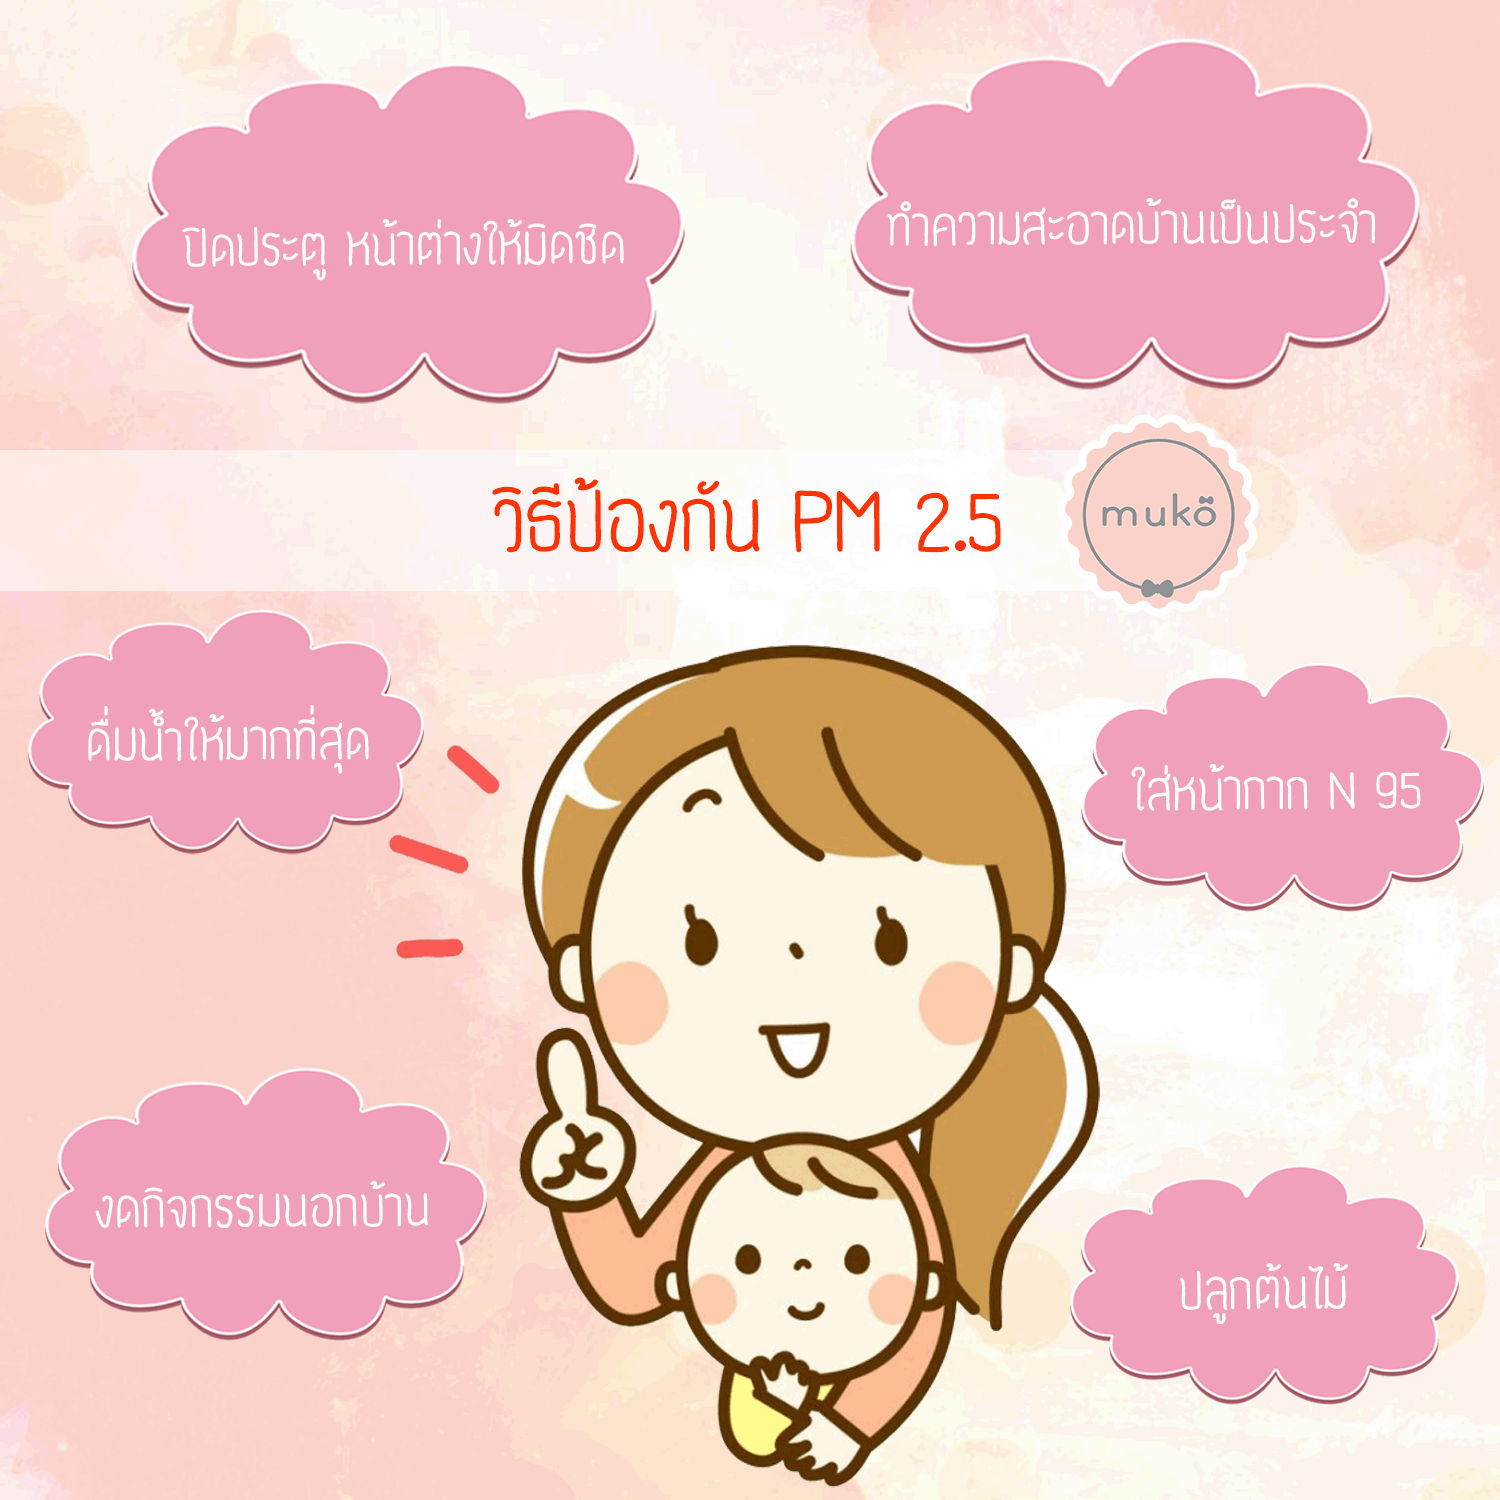 ฝุ่น PM 2.5 อันตรายที่คุณแม่ที่กำลังตั้งครรภ์ ไม่ควรมองข้าม!!